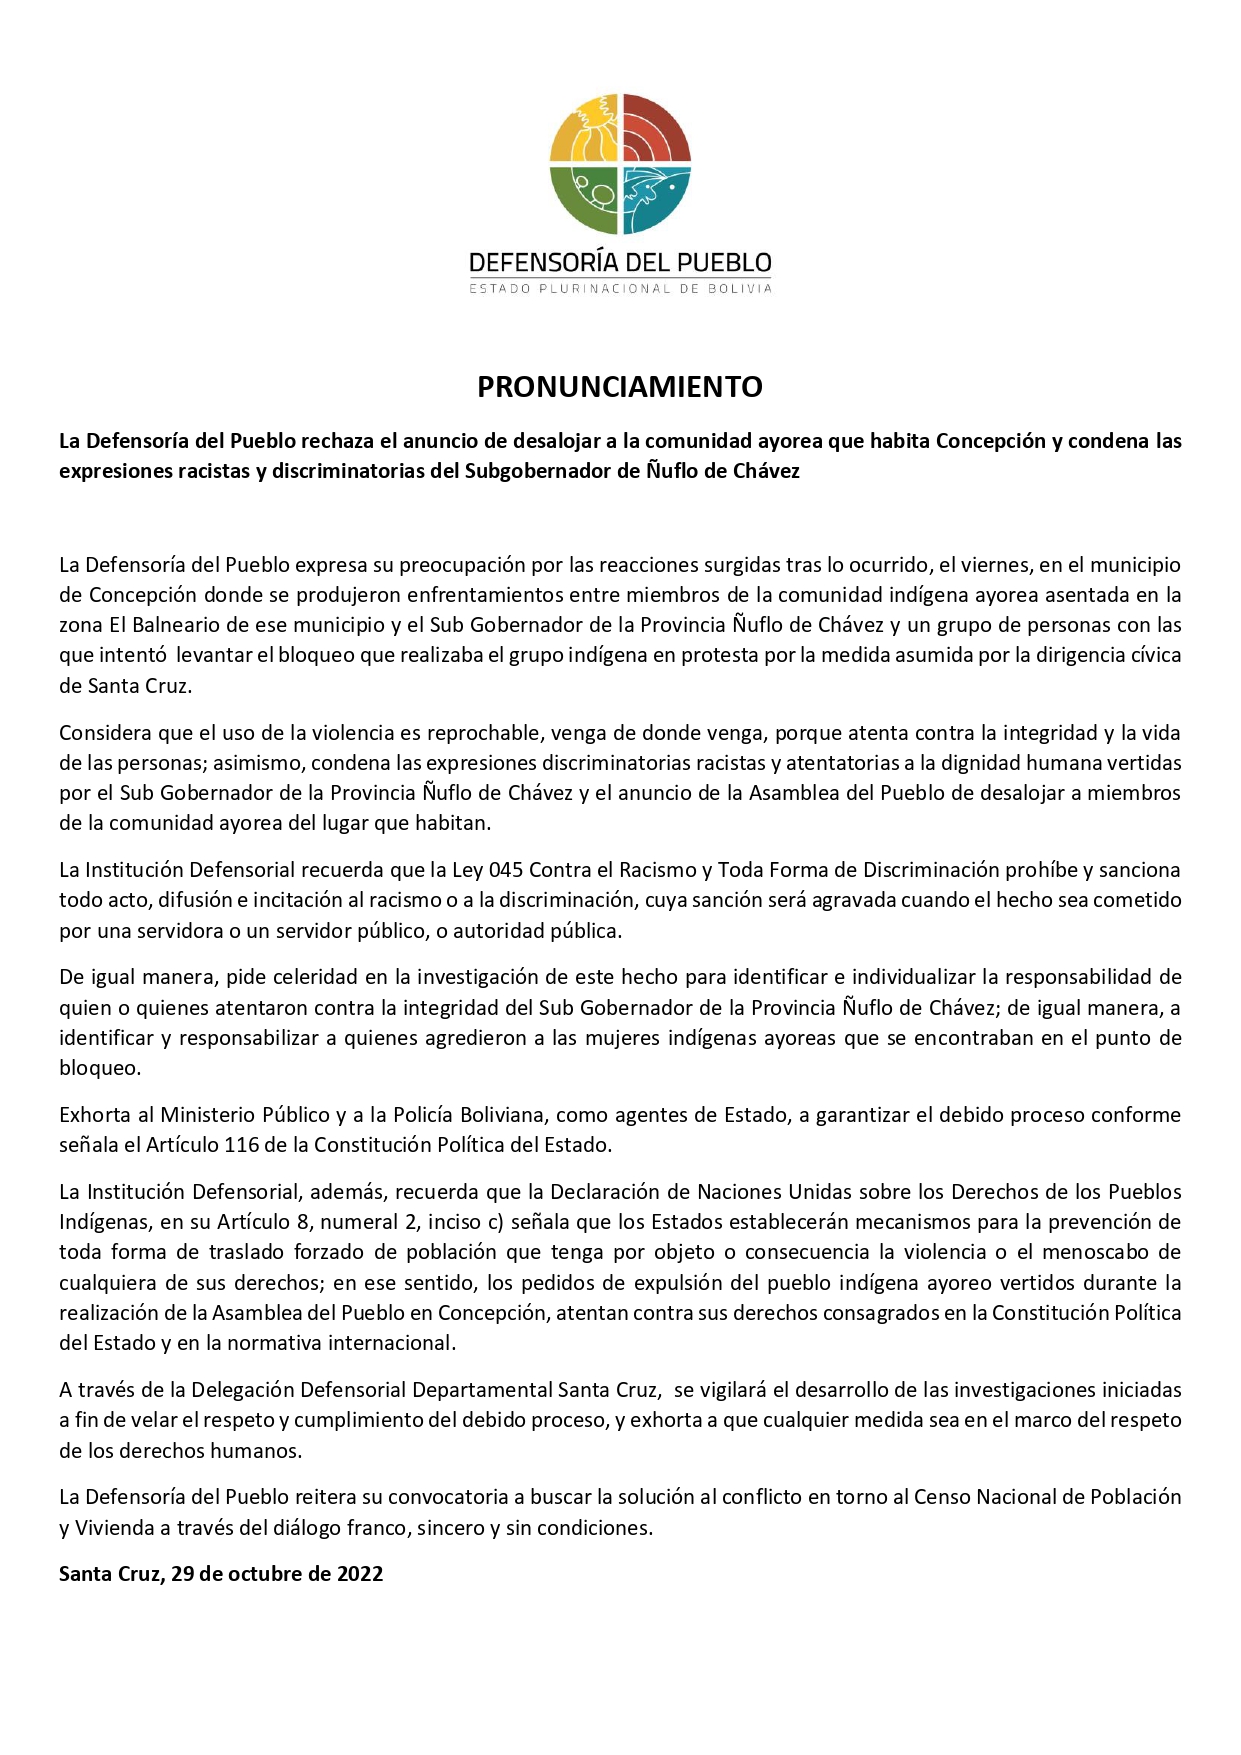 La Defensoría del Pueblo rechaza el anuncio de desalojar a la comunidad ayorea que habita Concepción y condena las expresiones racistas y discriminatorias del Subgobernador de Ñuflo de Chávez